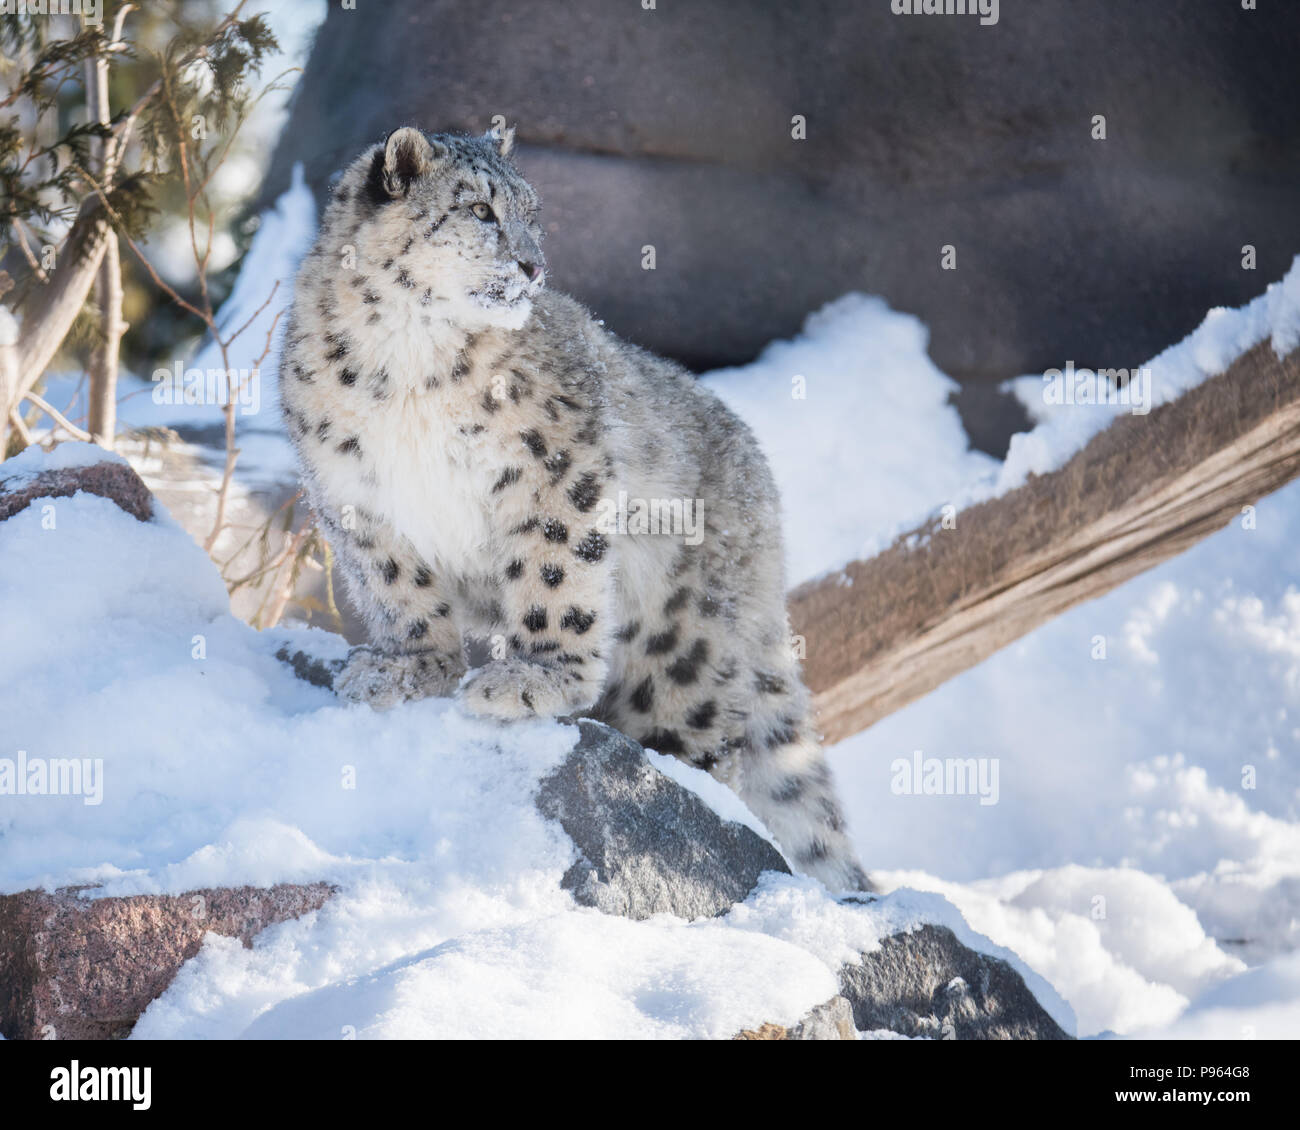 Un snow leopard cub esplora la sua neve-riempito habitat al Toronto Zoo, dove esso è parte di un programma di riproduzione in cattività per questa specie vulnerabili. Foto Stock